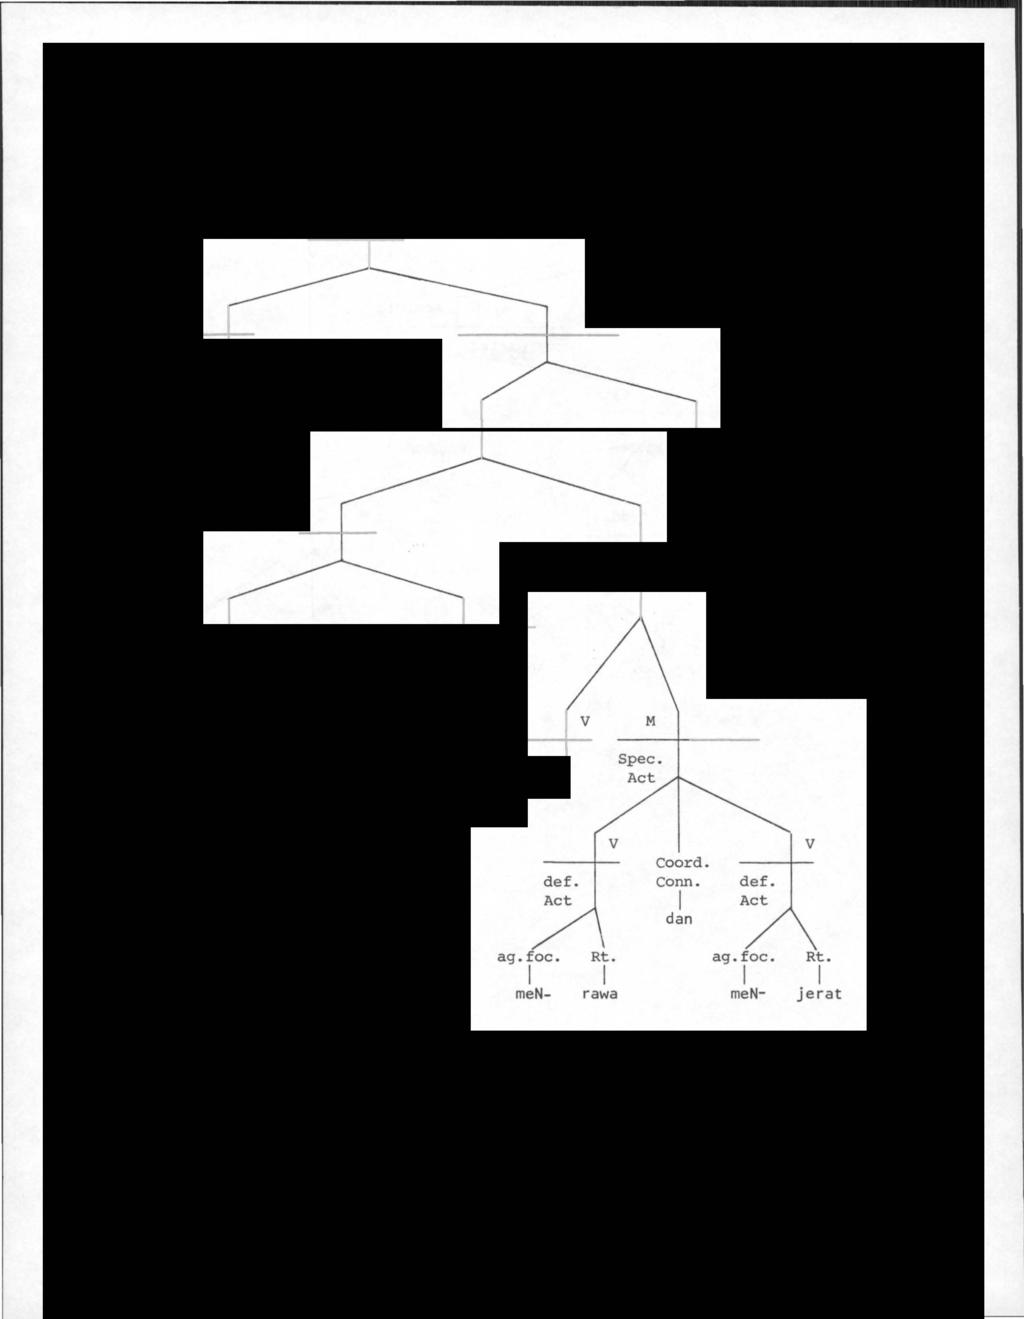 96 Display 3.6.16. Tree diagram (6la)... tempat Encik Tan i nai kturun merawa dan menj erat itu Elab. NP Spec. H N M Nom.Cl. defined defining tempat H Cl. M Def.